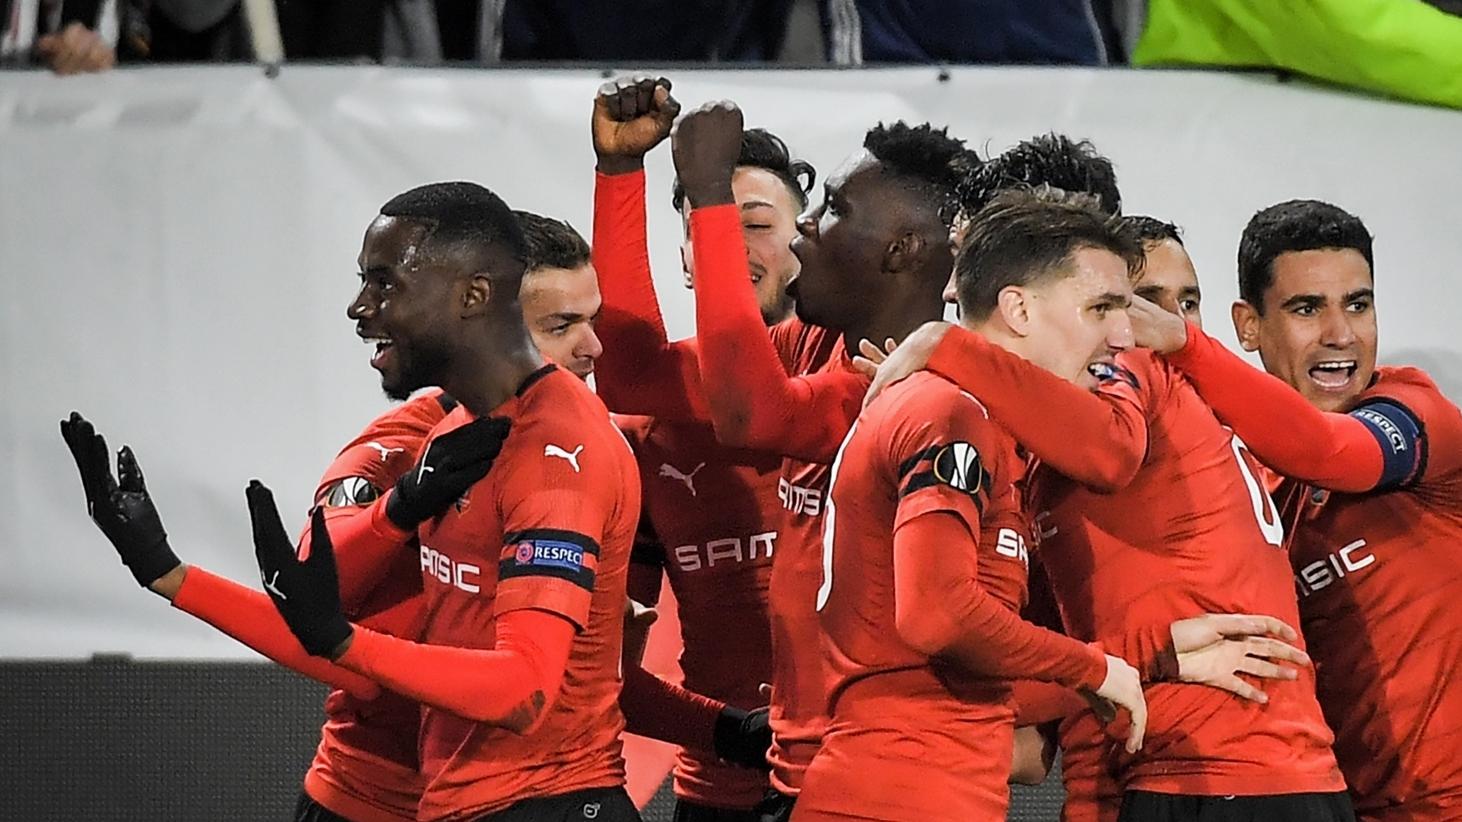 Europa League Programme & Sport Journal Rennes V Arsenal 7:3/19 Stade Rennais 